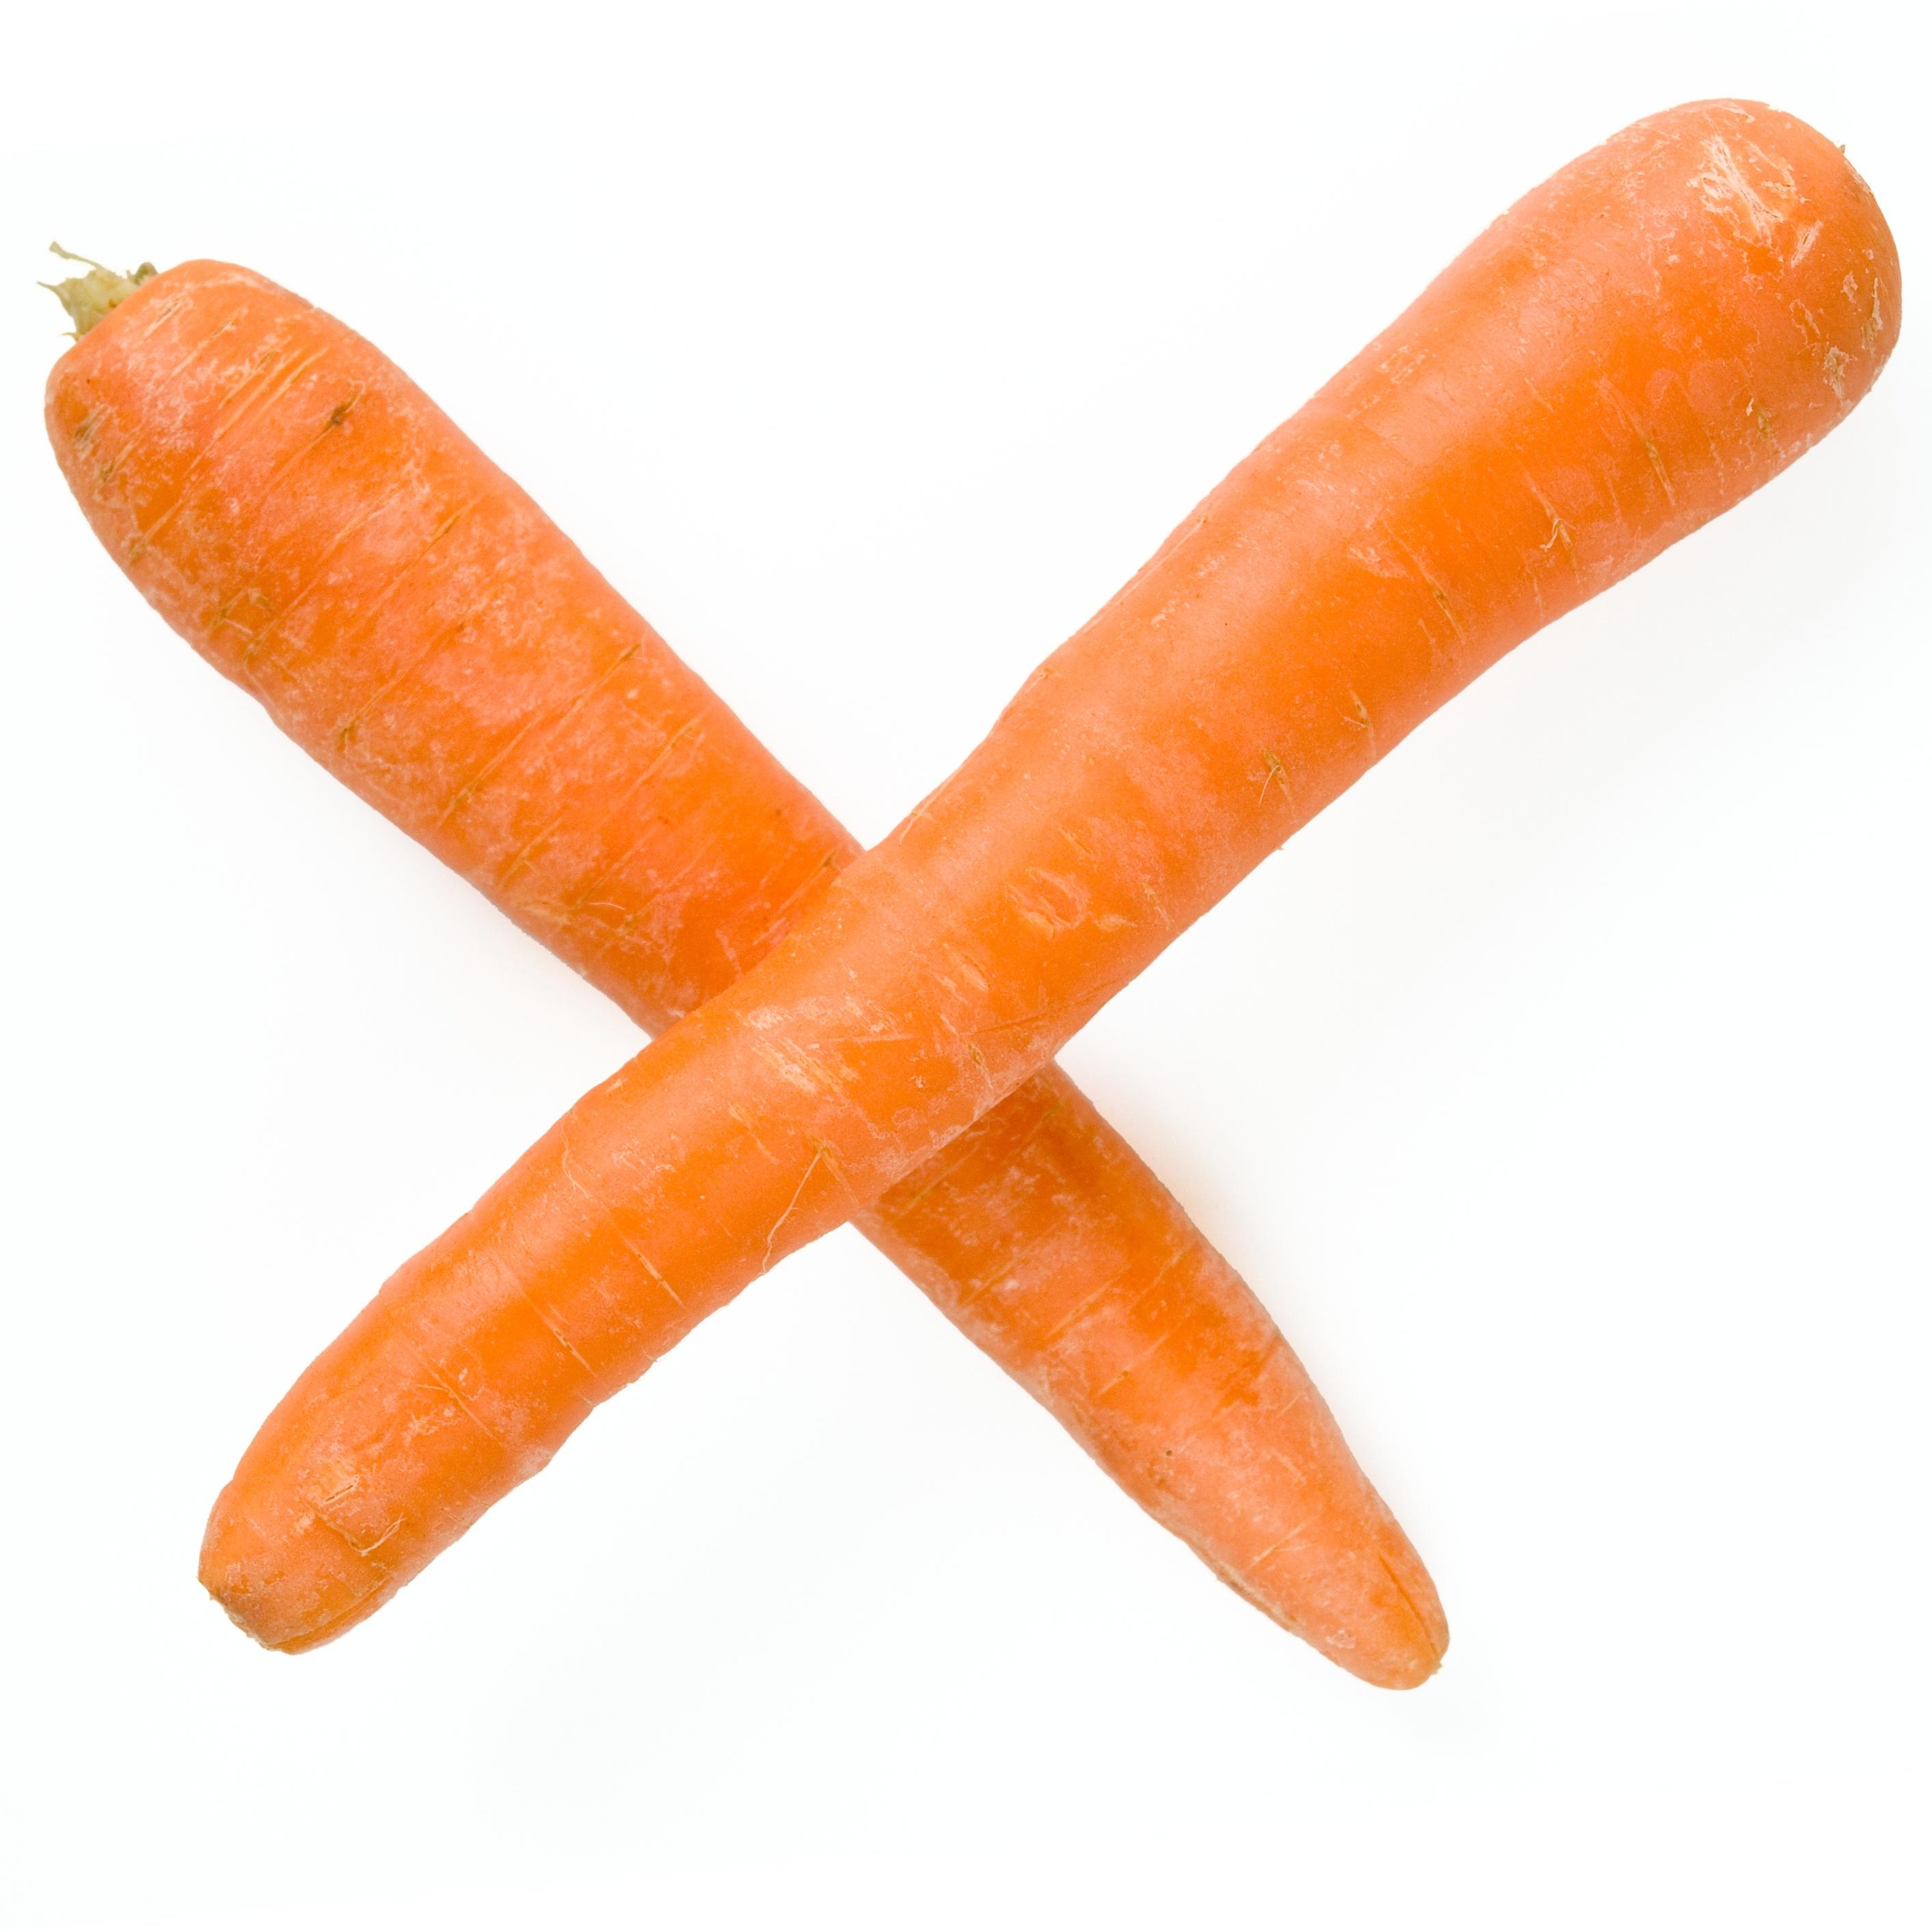 La carotte et l’huile de carotte